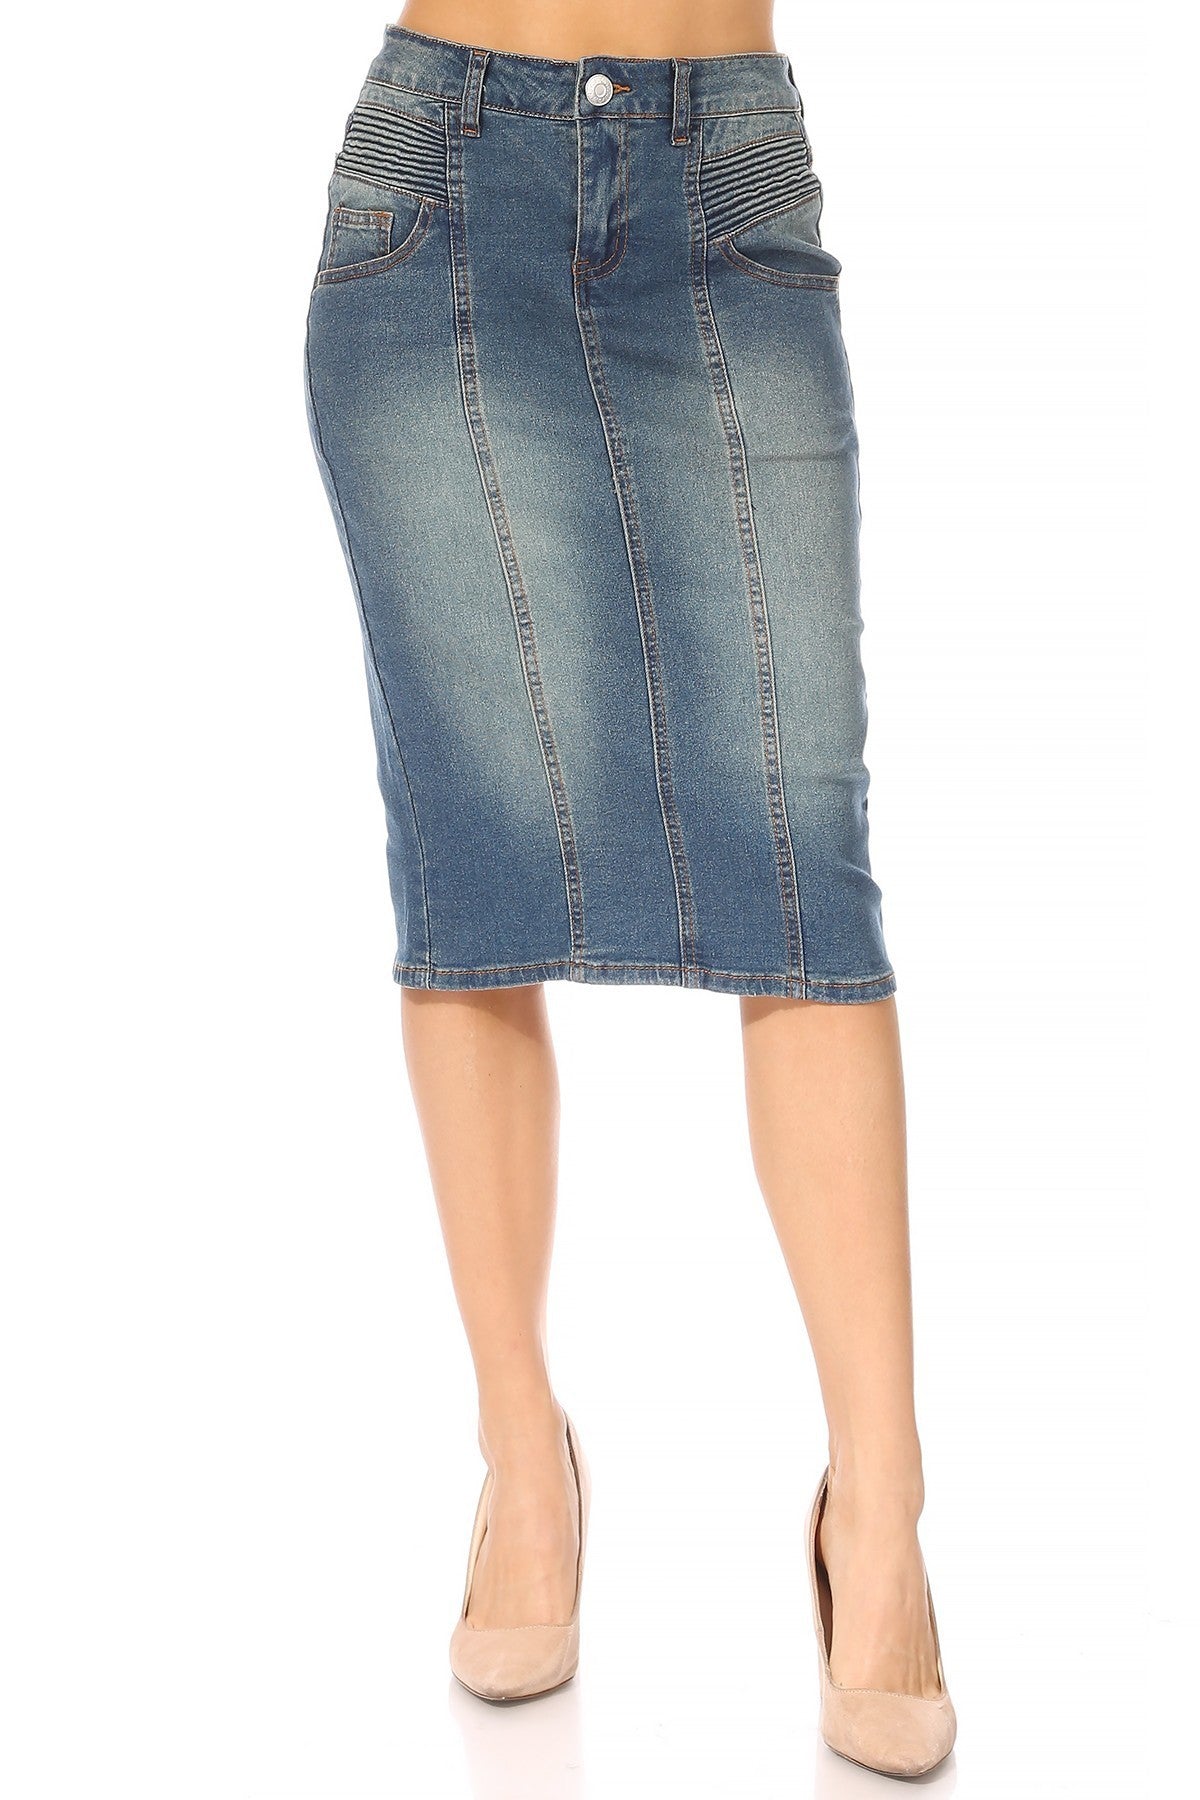 Buy Blue Denim Solid Knee Length Skirts for Women - Global Republic